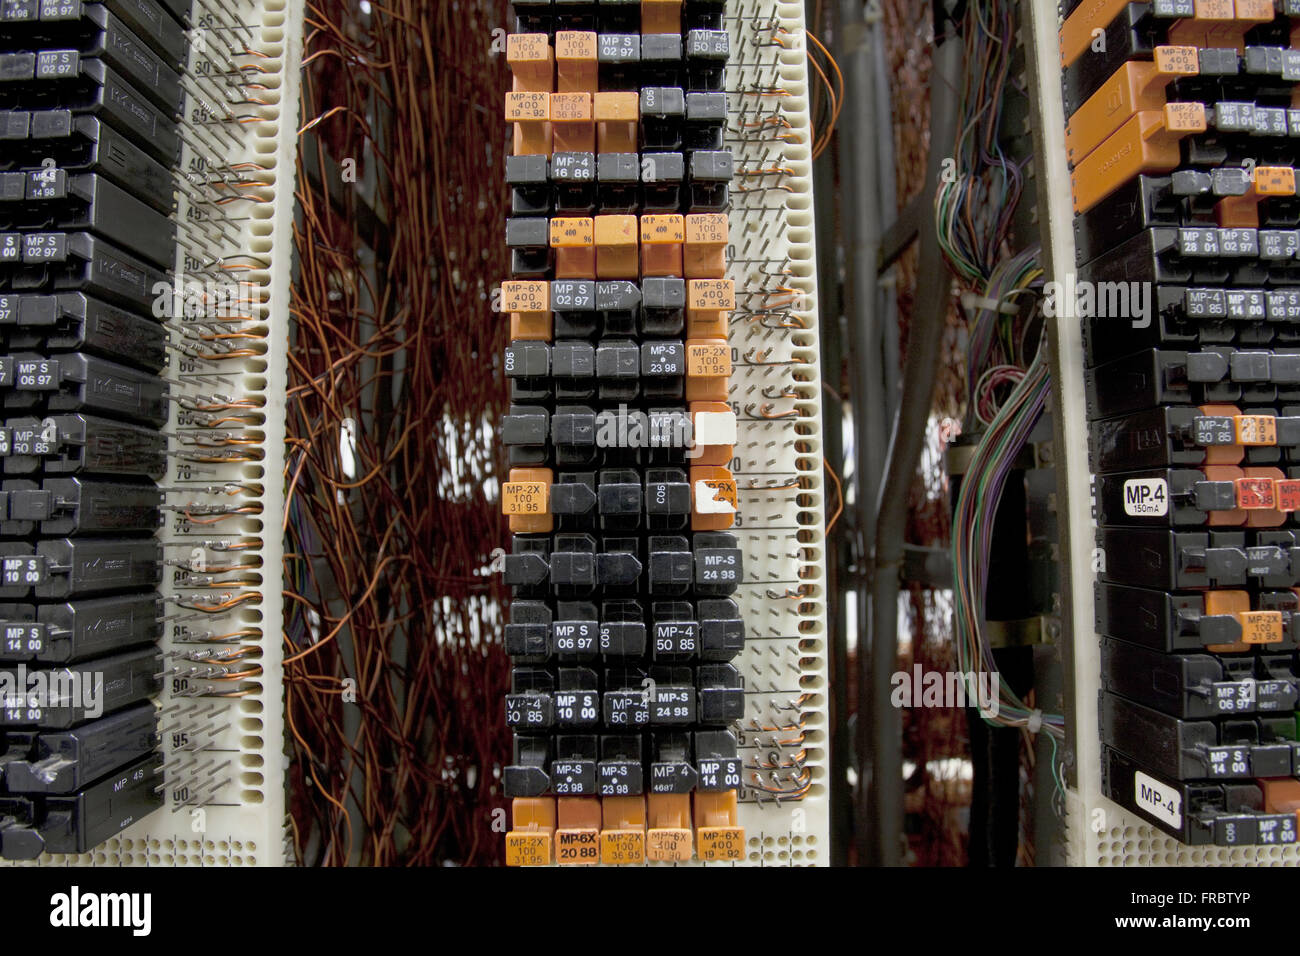 Detalle del distribuidor general y proveedor de cables telecomunicaciones Fotografía de stock Alamy